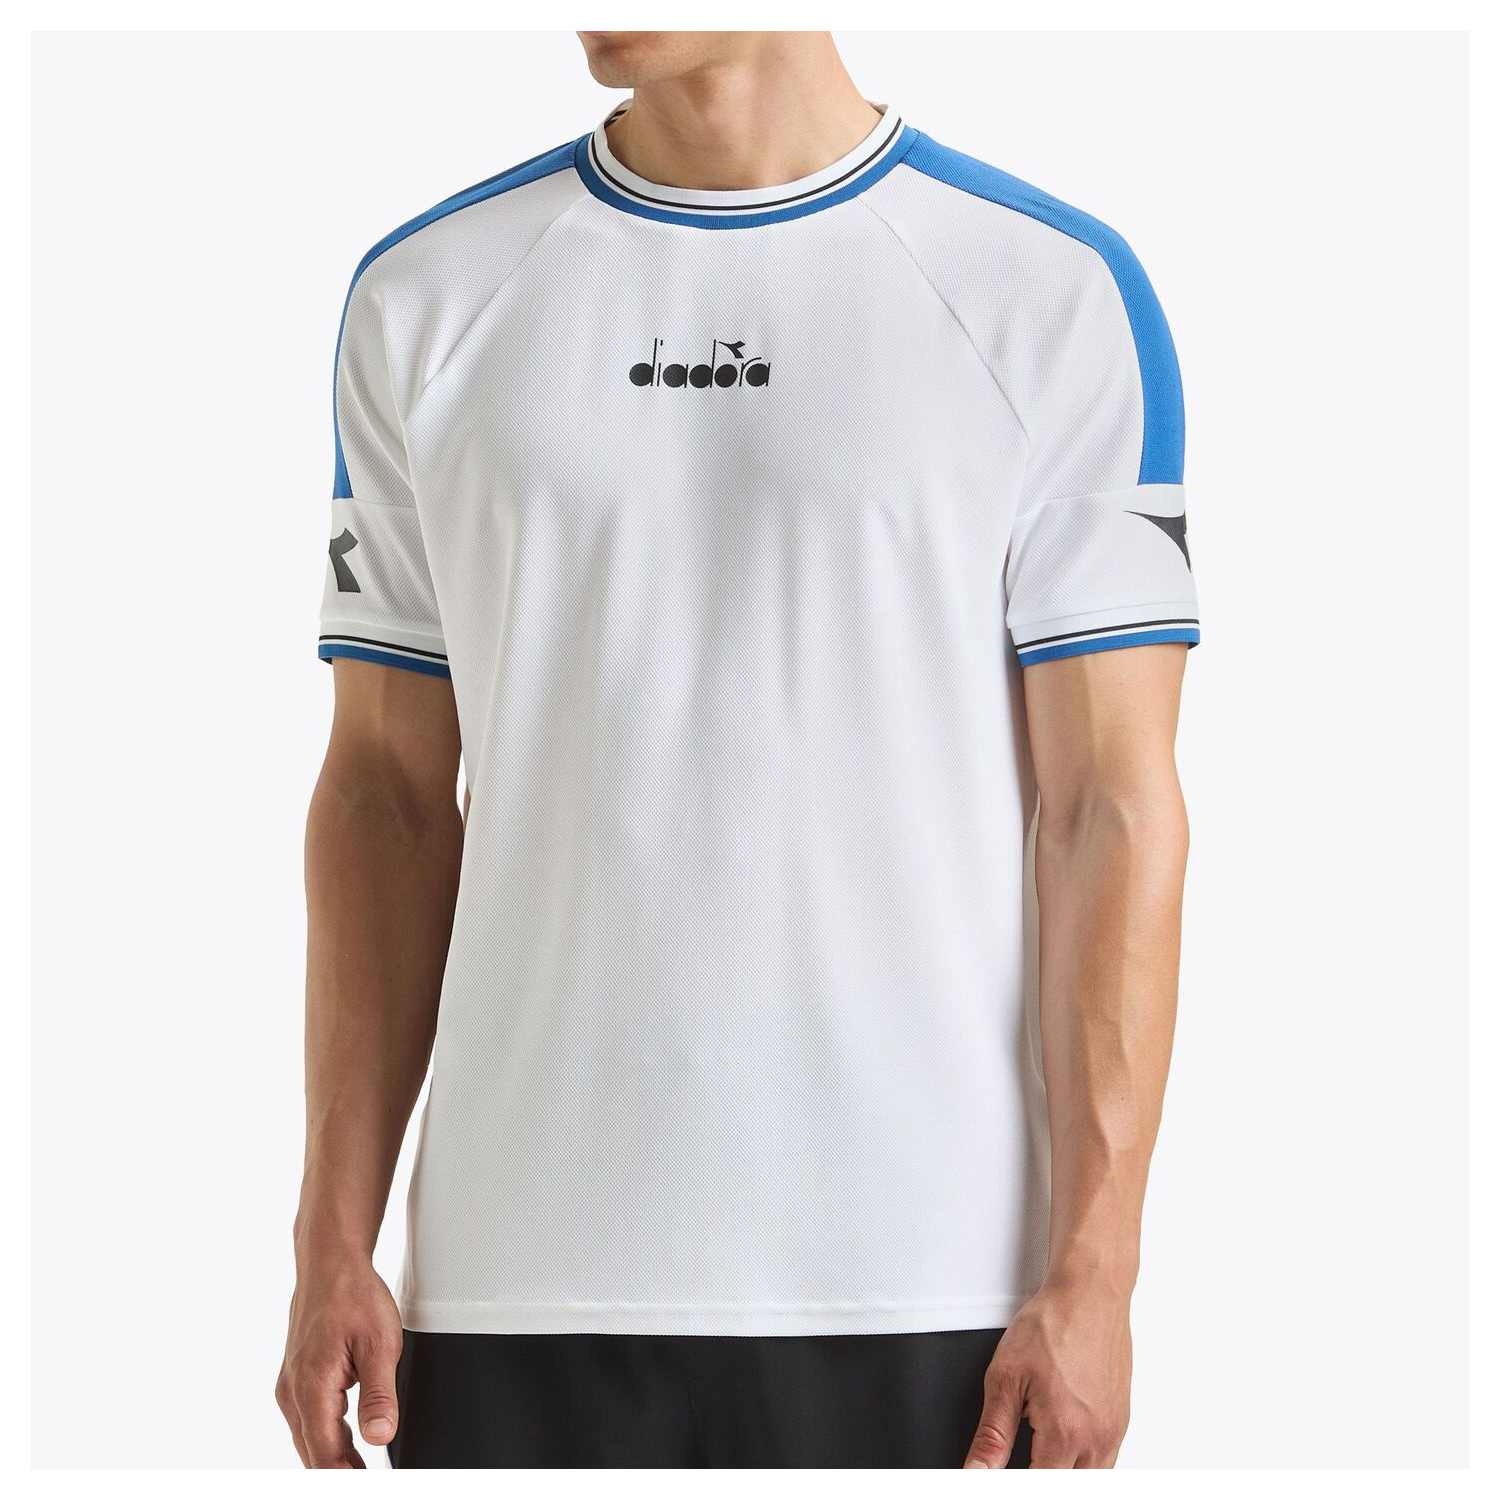 Diadora T-Shirt Icon White